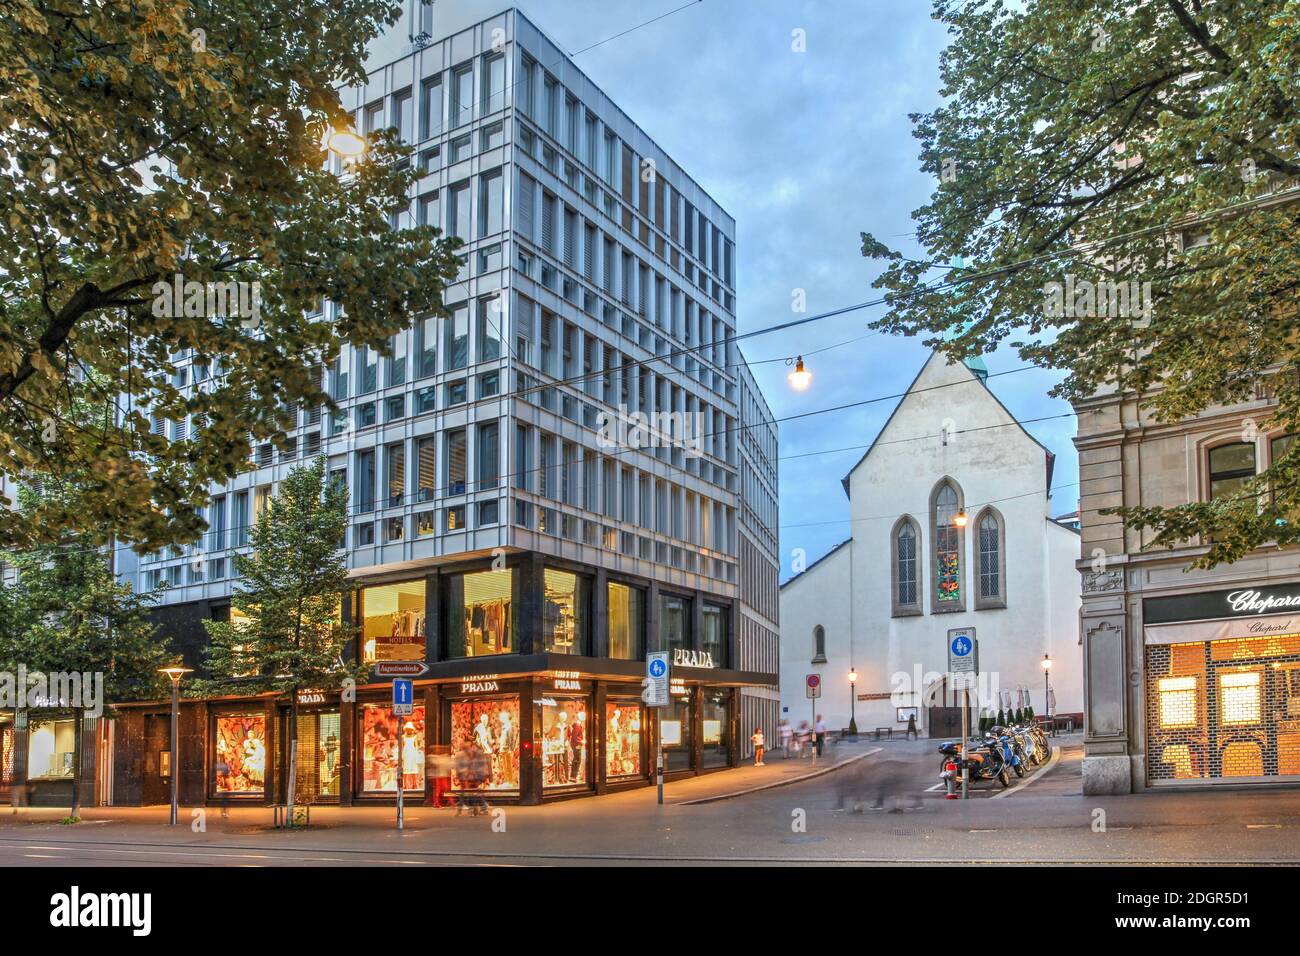 Scène nocturne de la Bahnhofstrasse, la principale rue commerçante de Zurich, avec le magasin Prada et l'Augustinerkirche, l'une des plus anciennes églises de Banque D'Images